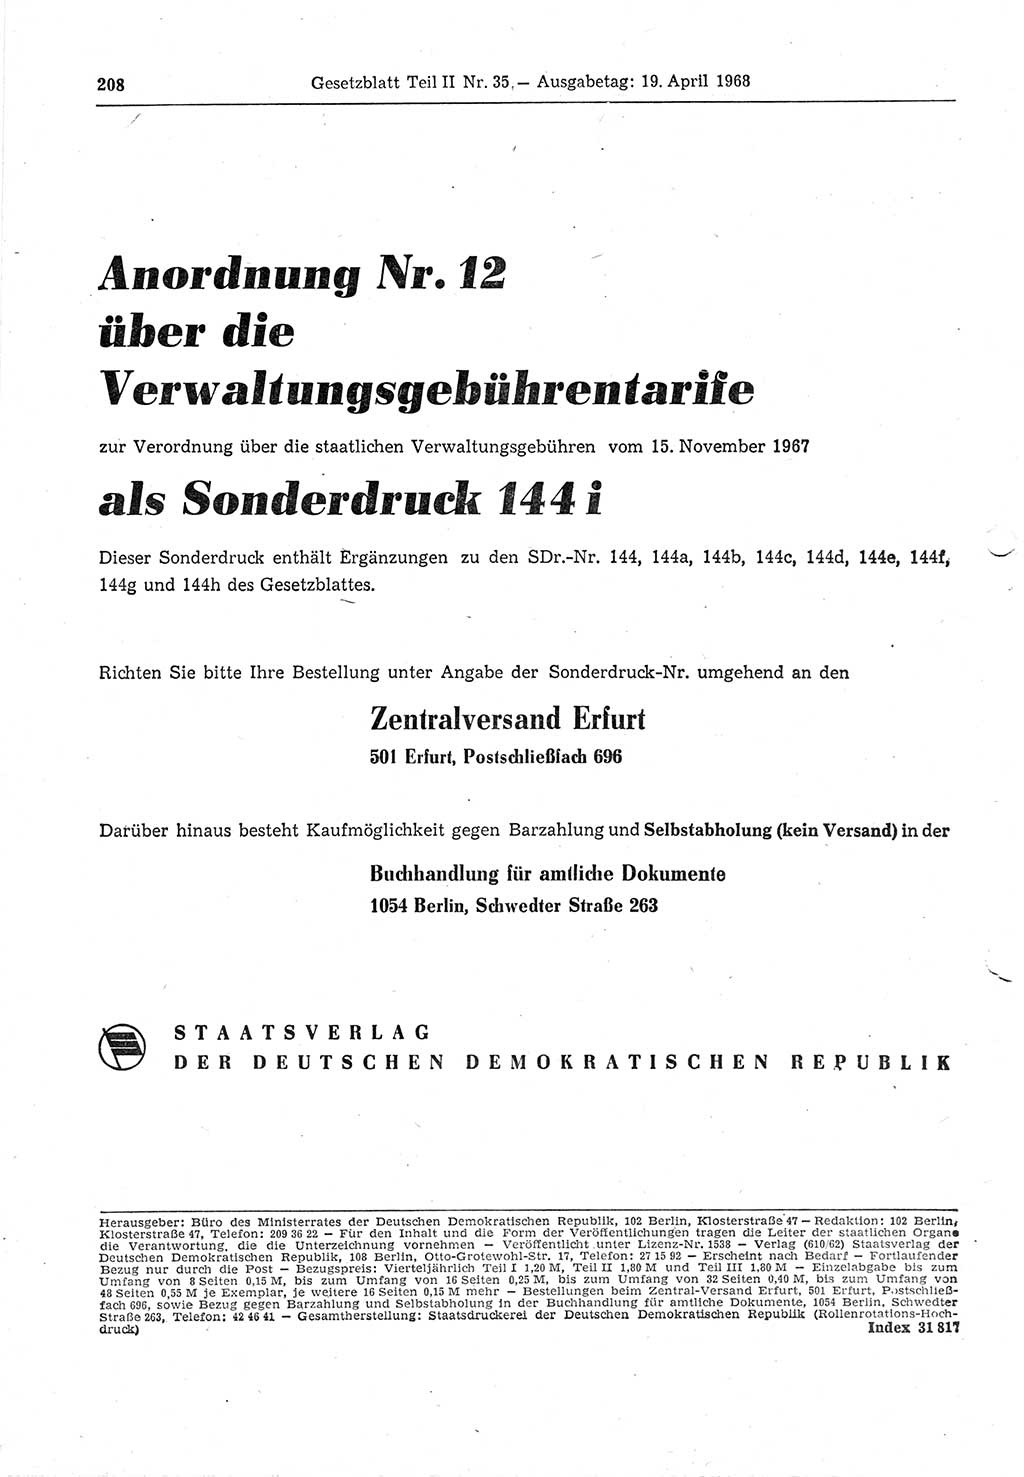 Gesetzblatt (GBl.) der Deutschen Demokratischen Republik (DDR) Teil ⅠⅠ 1968, Seite 208 (GBl. DDR ⅠⅠ 1968, S. 208)